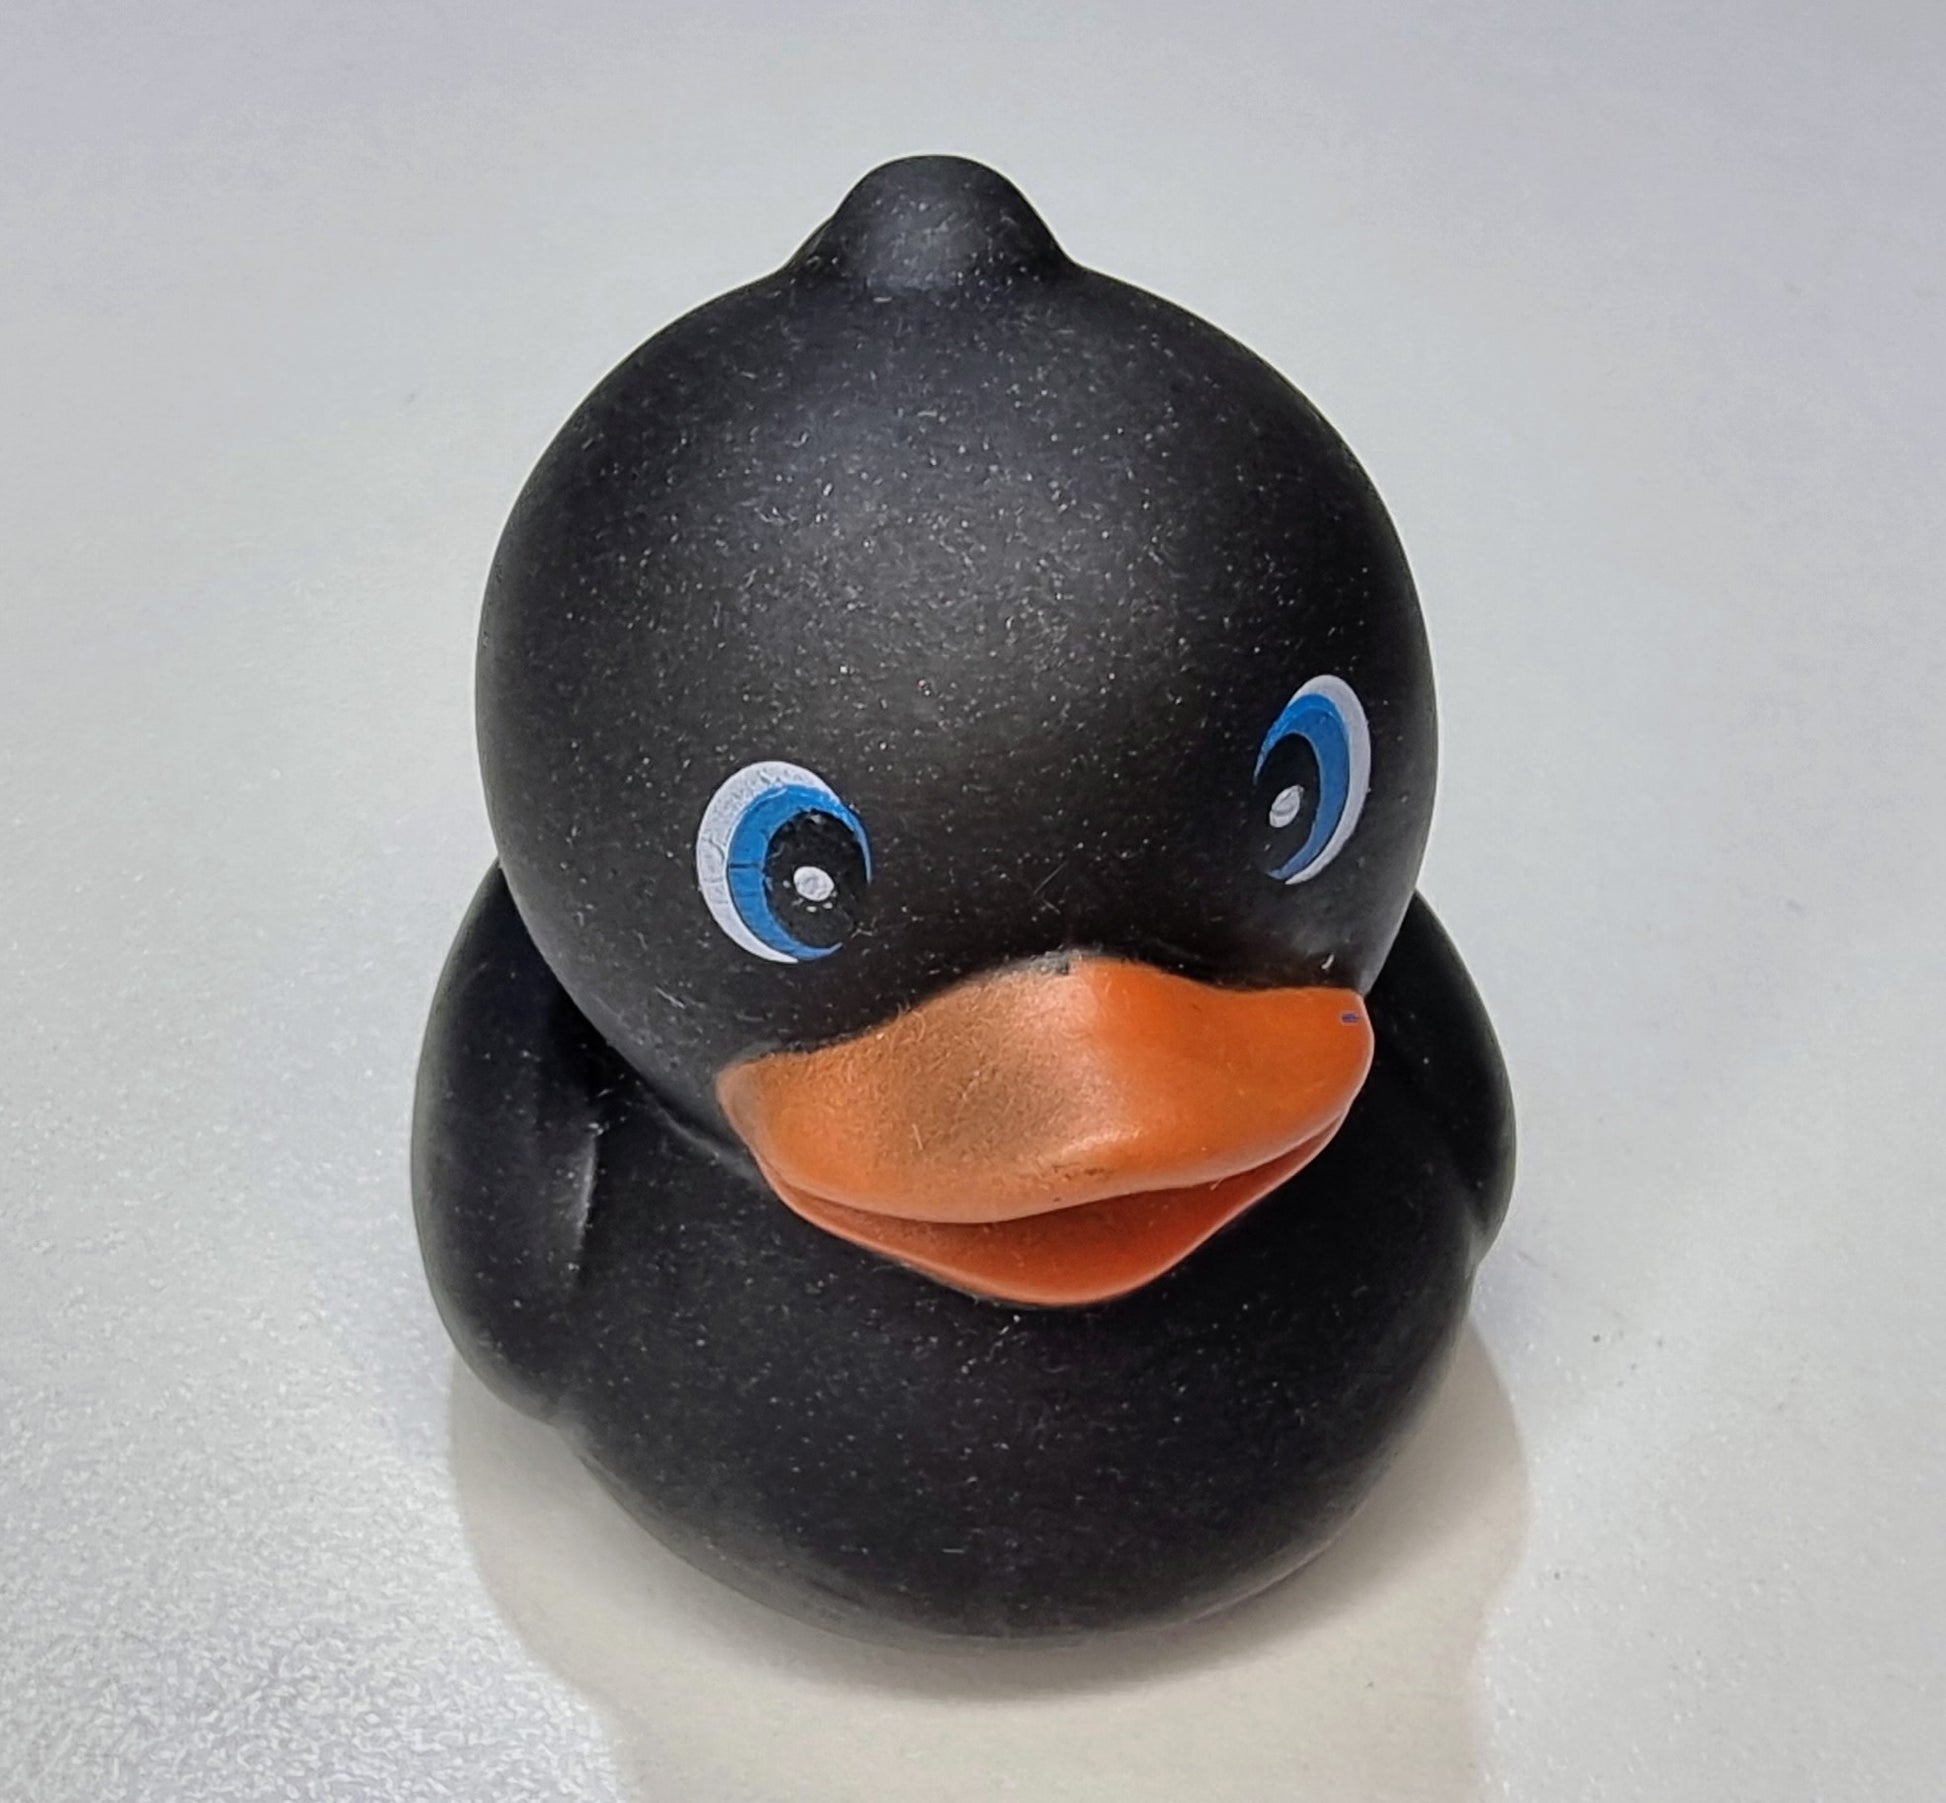 Black Chubby Style small bath ducky